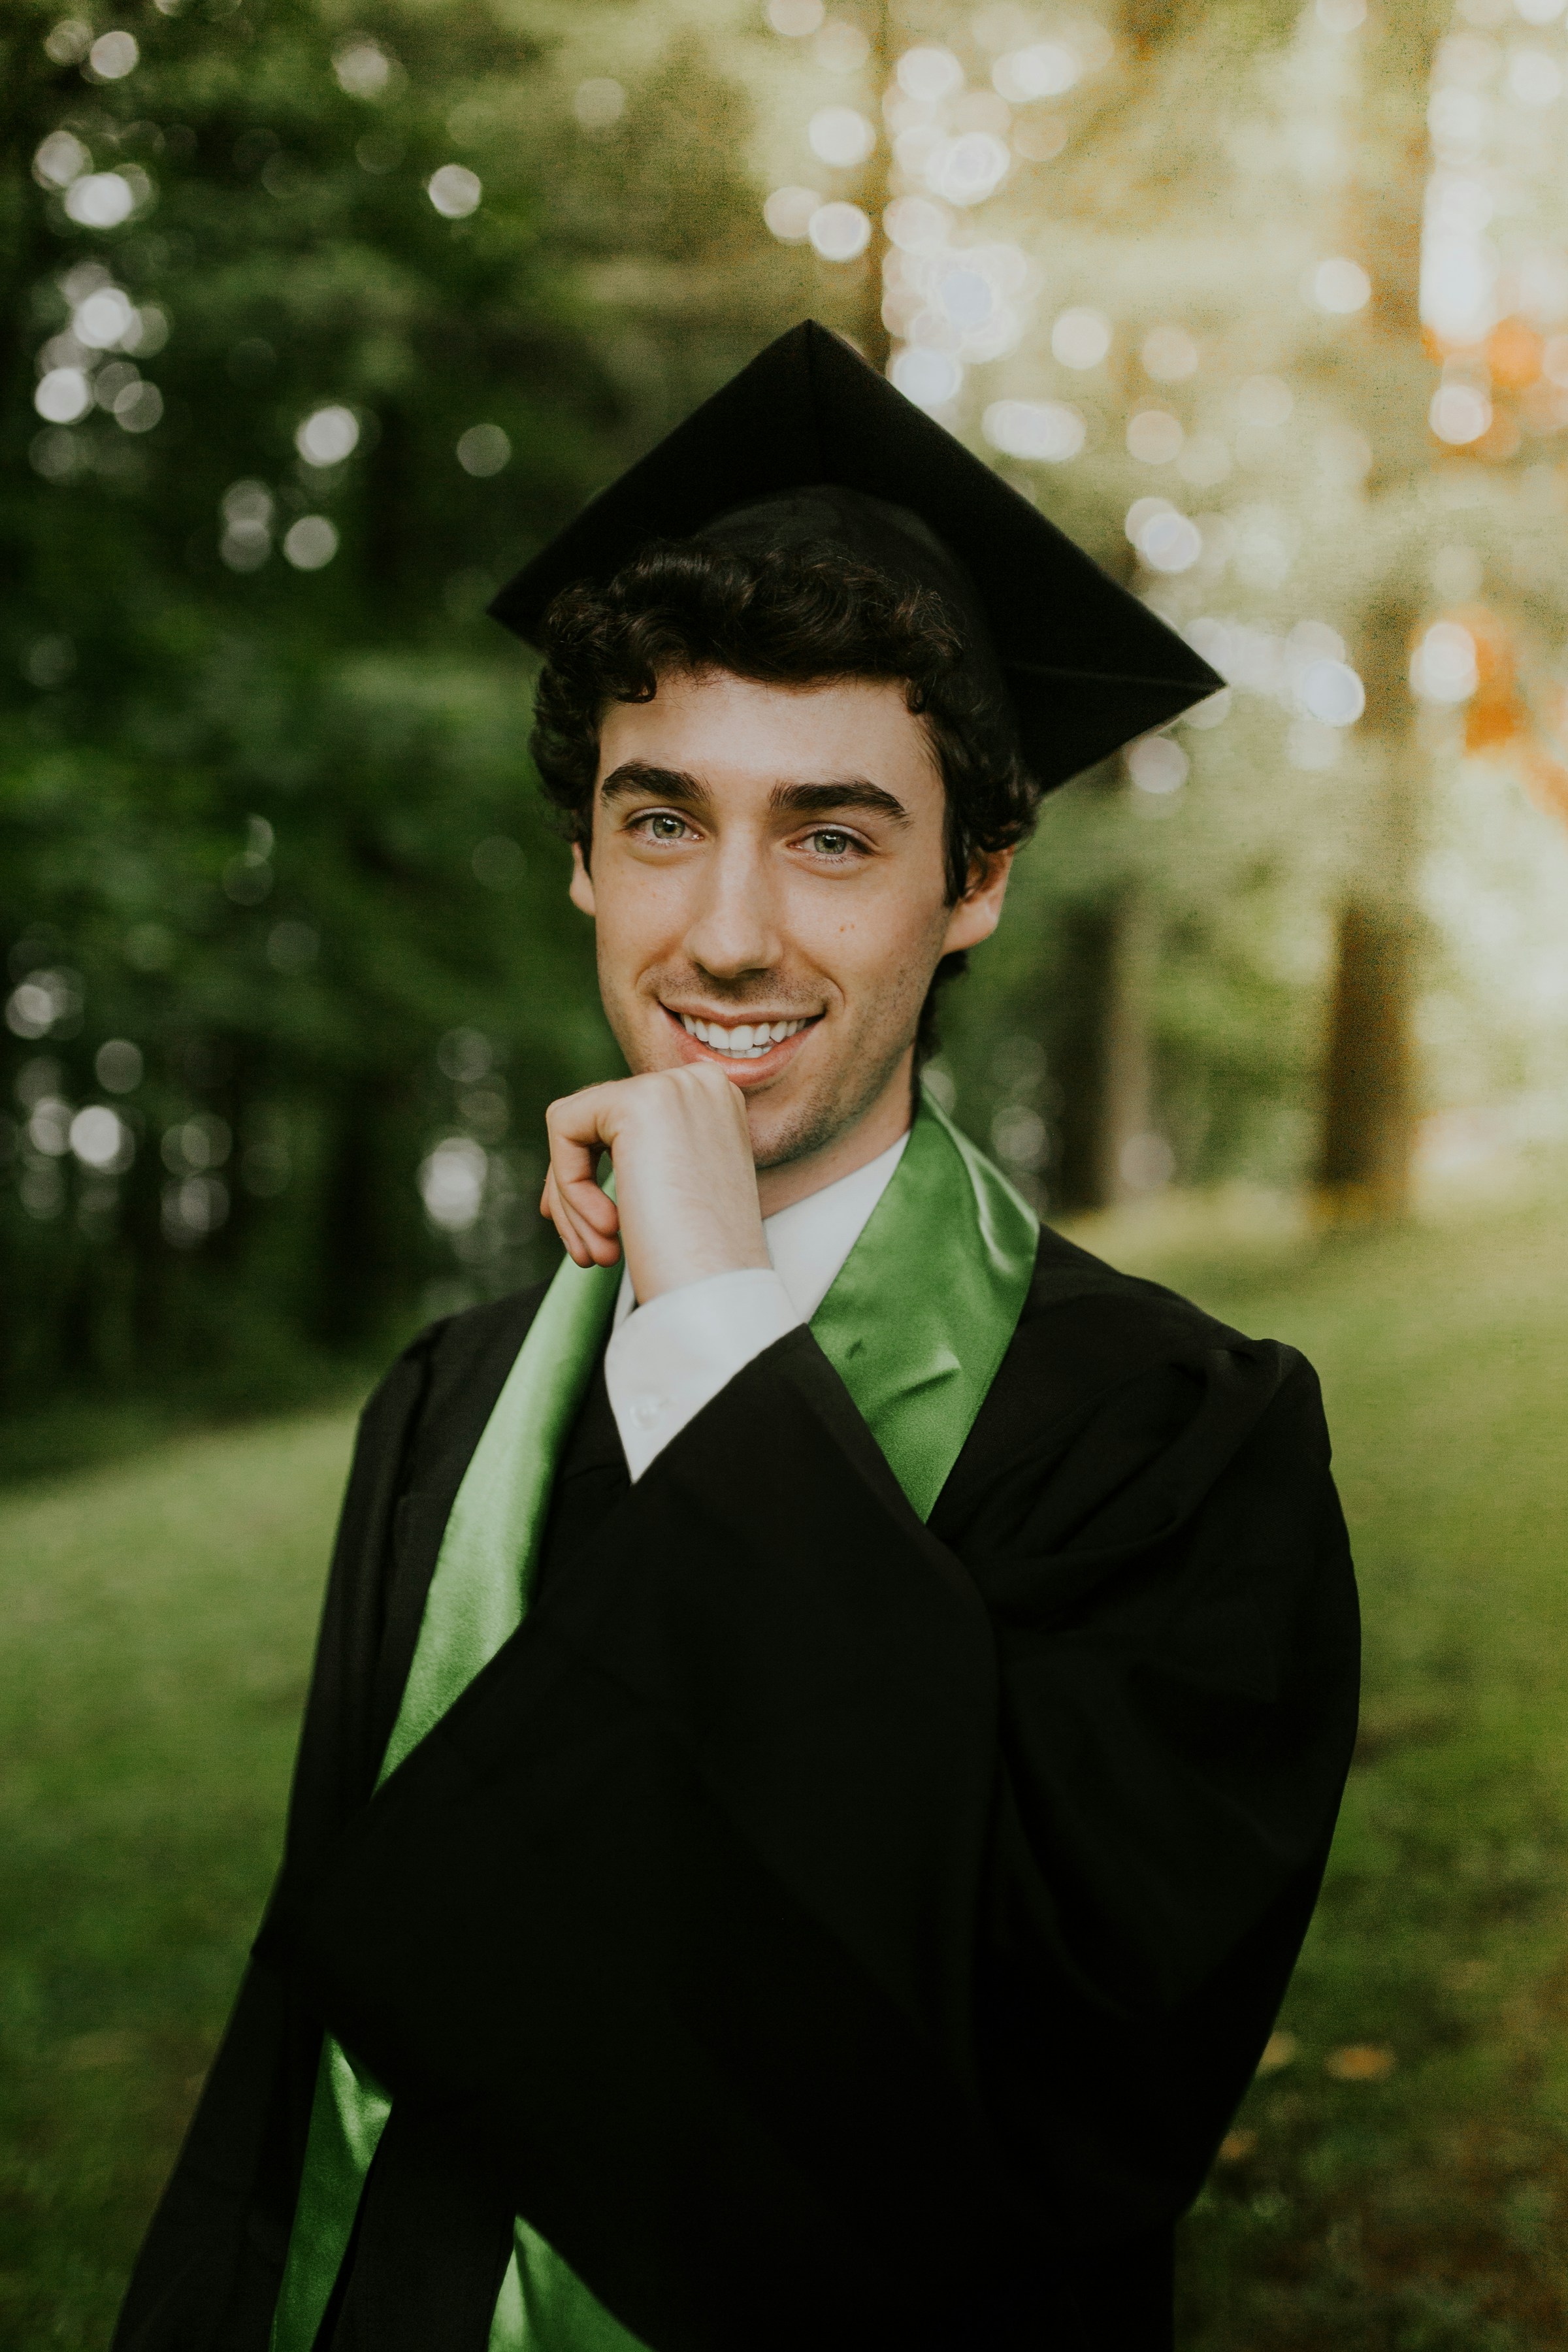 Un joven sonriente con un traje de graduación | Fuente: Unsplash